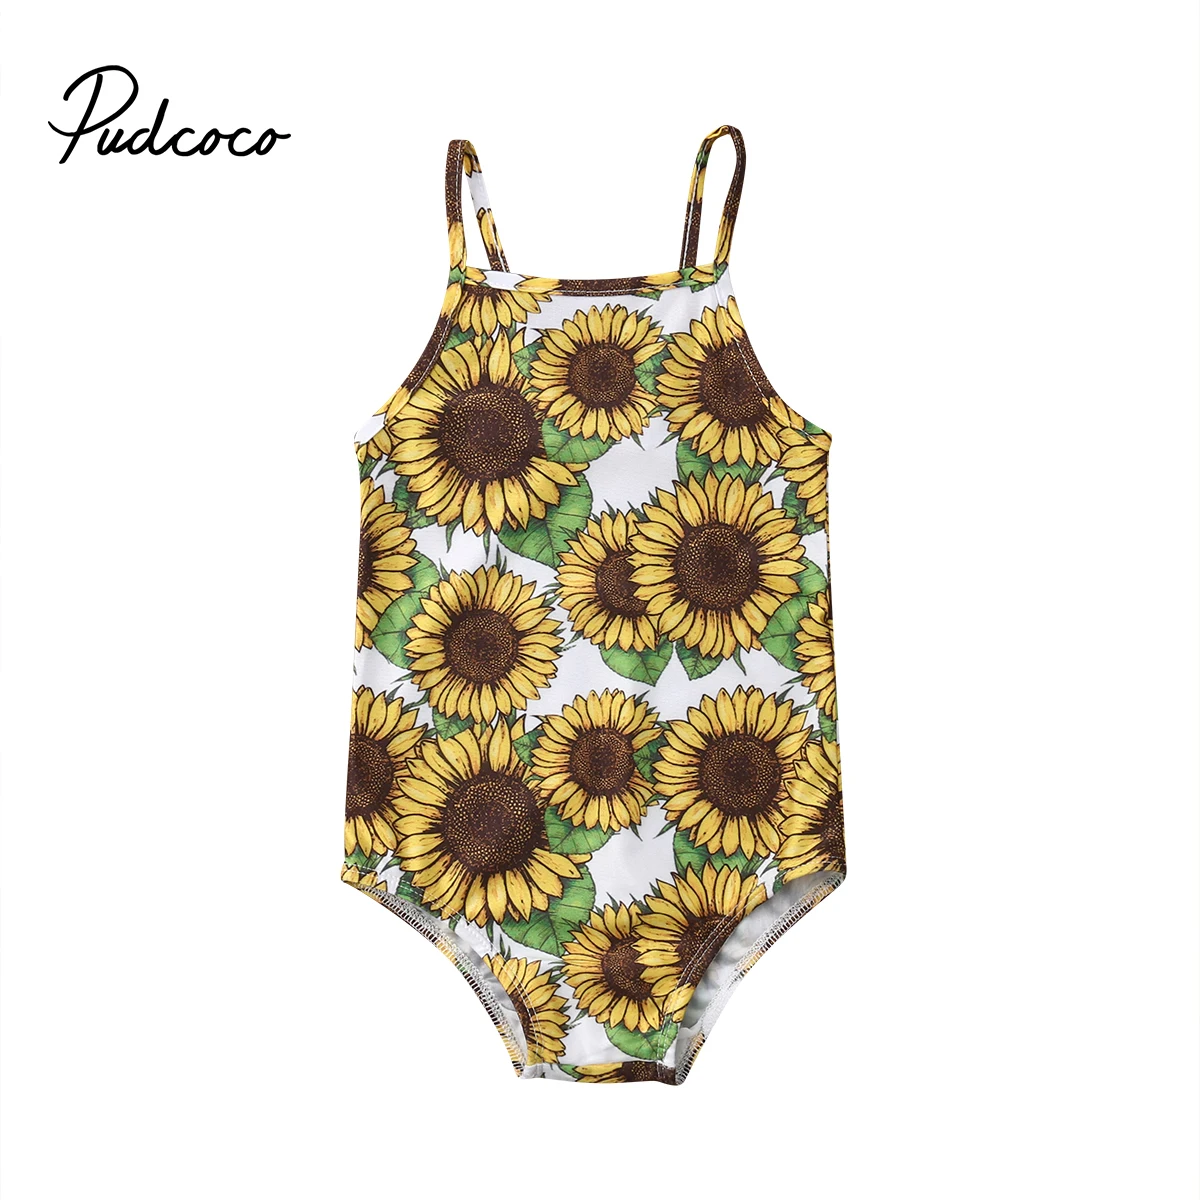 Pudcoco от 2 до 6 лет 2019 новый бренд дети девочки купальник с подсолнухом купальный костюм